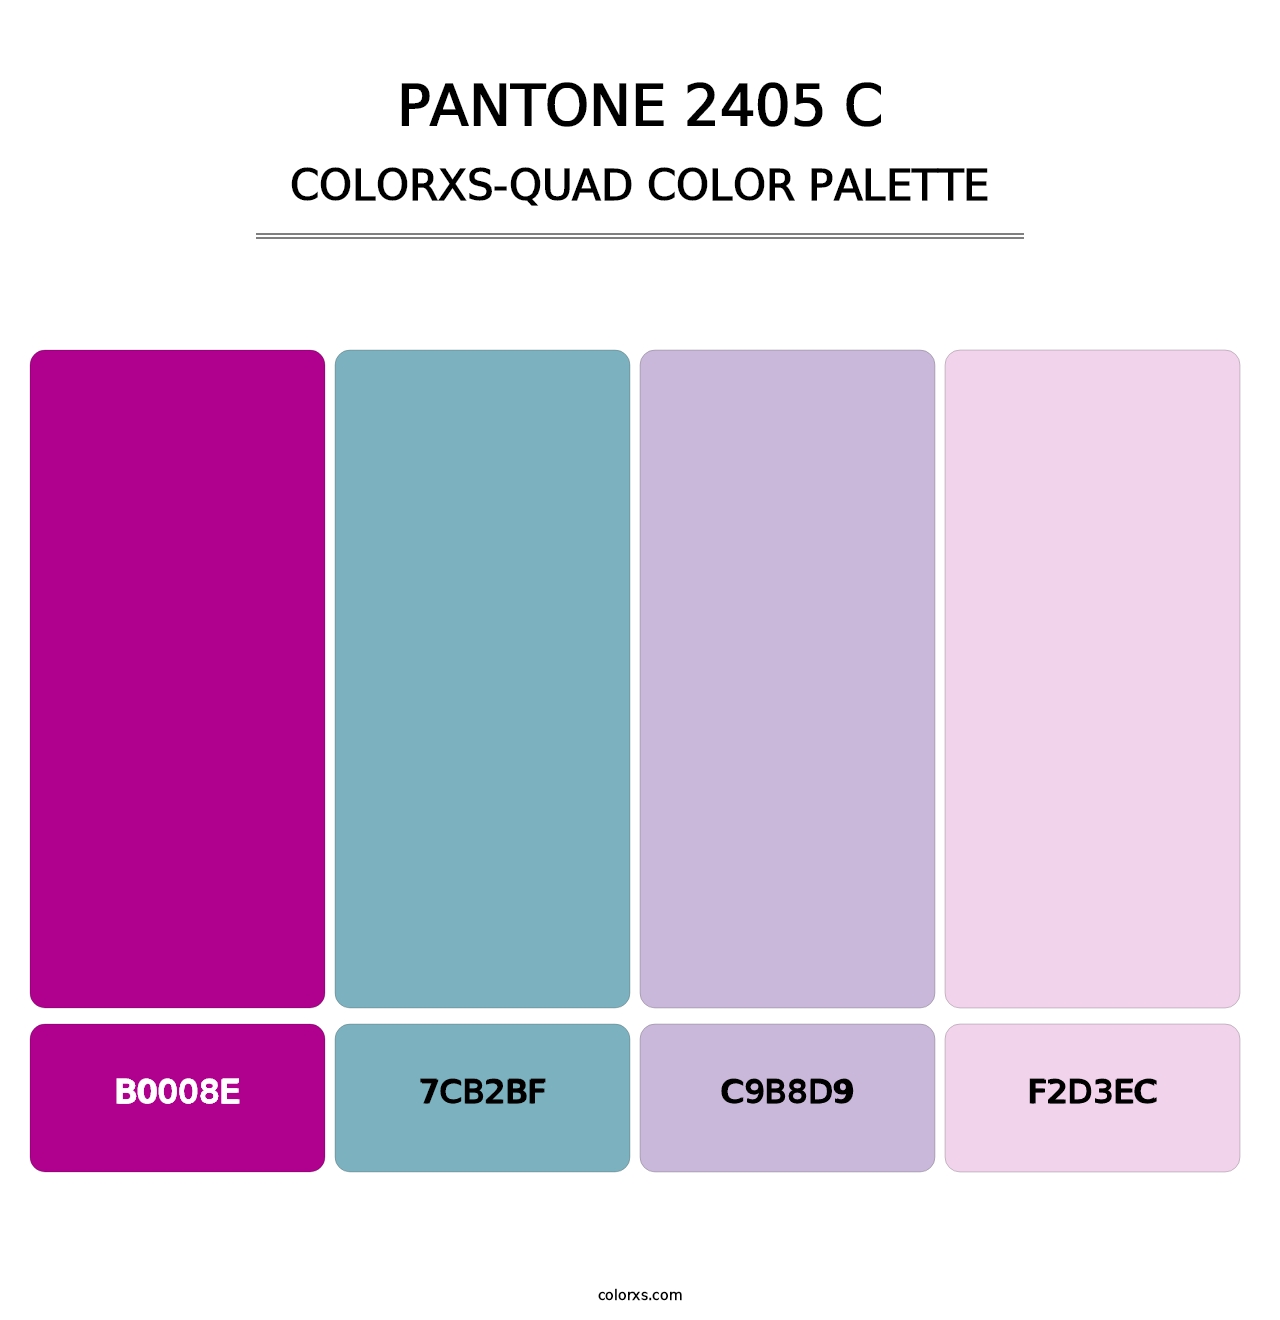 PANTONE 2405 C - Colorxs Quad Palette